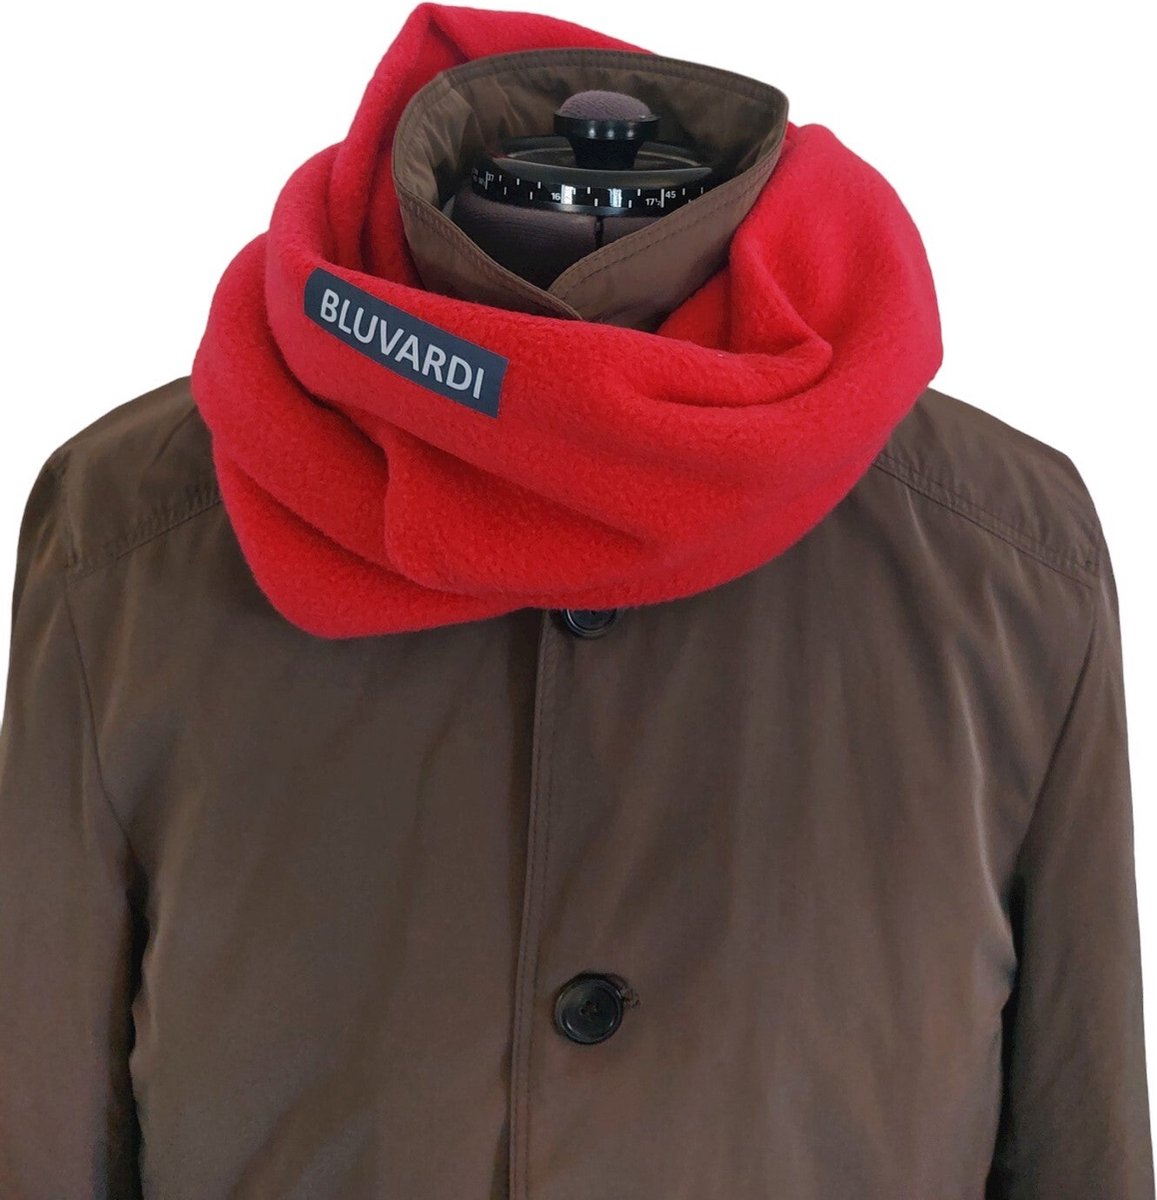 Bluvardi - Infinity Warme Antipilling Fleece Sjaal - One size - Rood